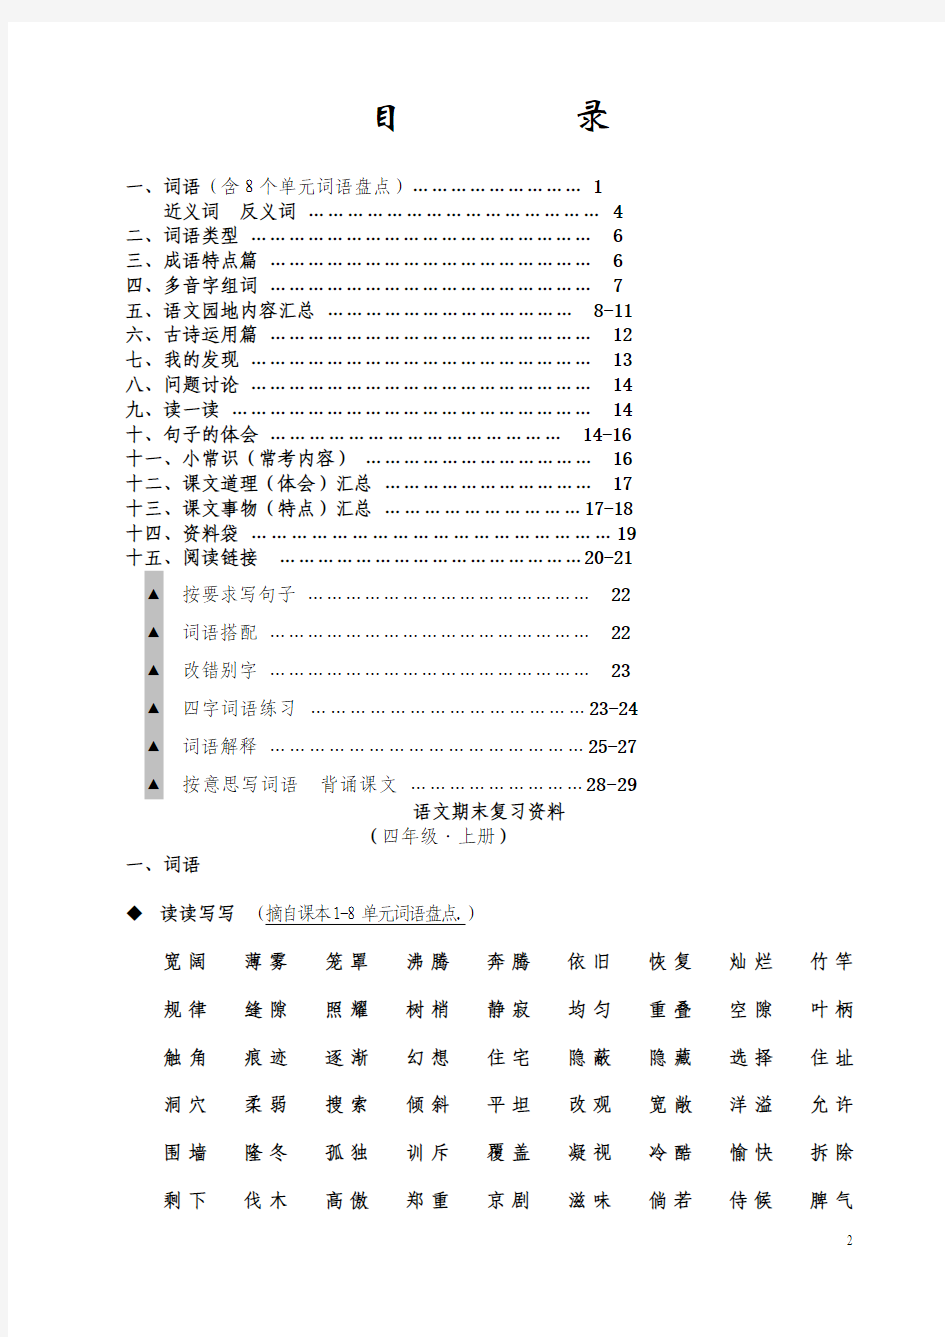 人教版四年级语文上册期末复习资料6(内容全面并附有目录!!!)